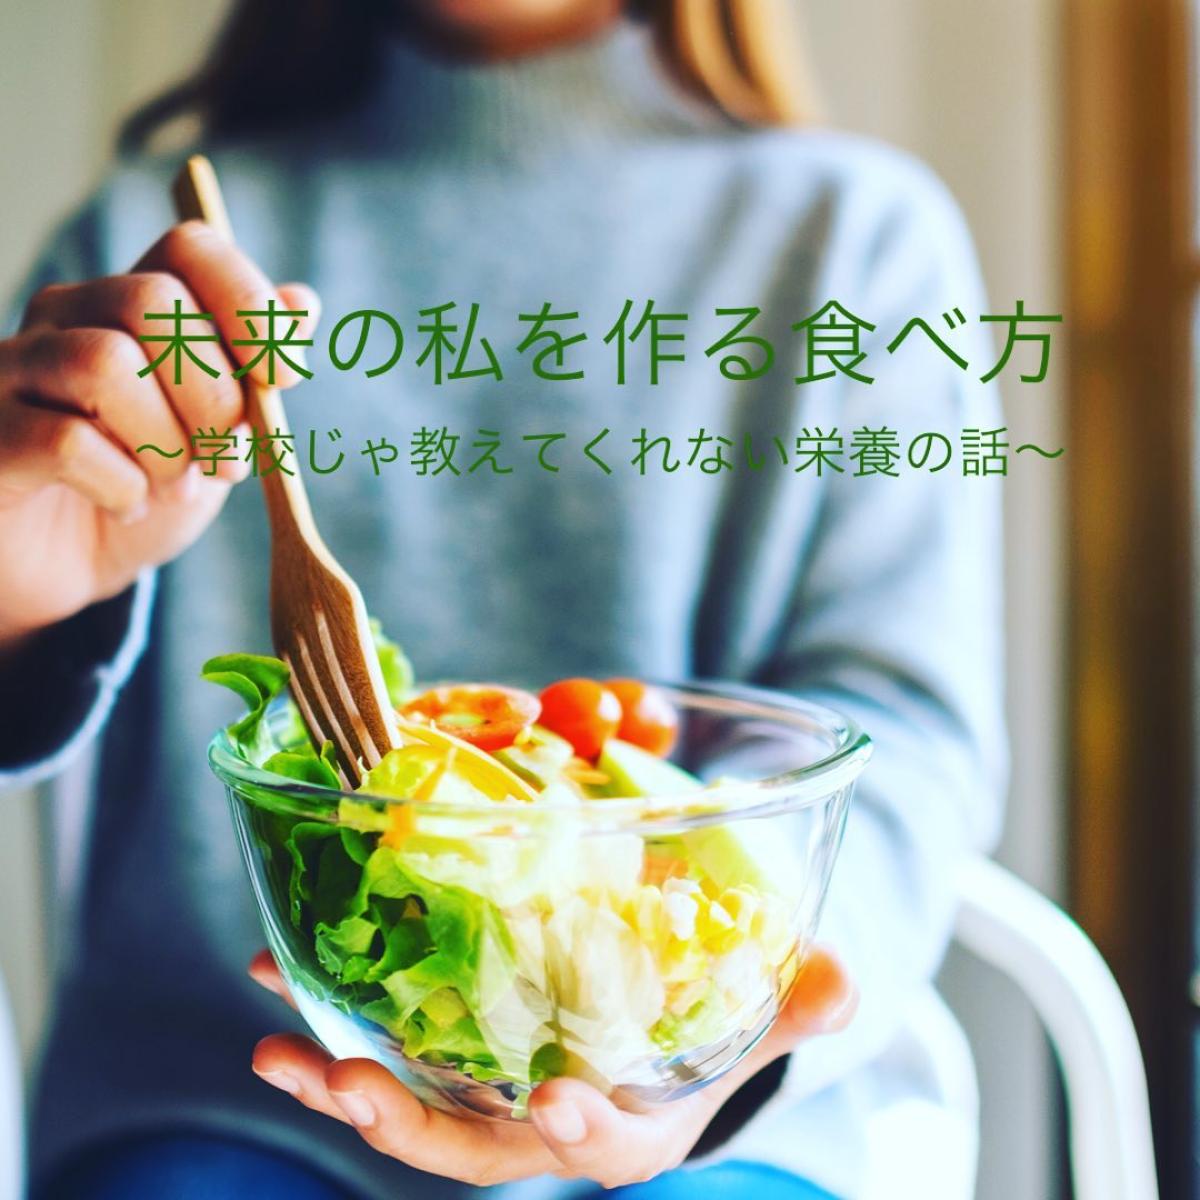 10月2日に竹内サチ子さんが栄養ワークショップの講師をご担当されます！【栄養コンシェルジュ取得後のご活躍】